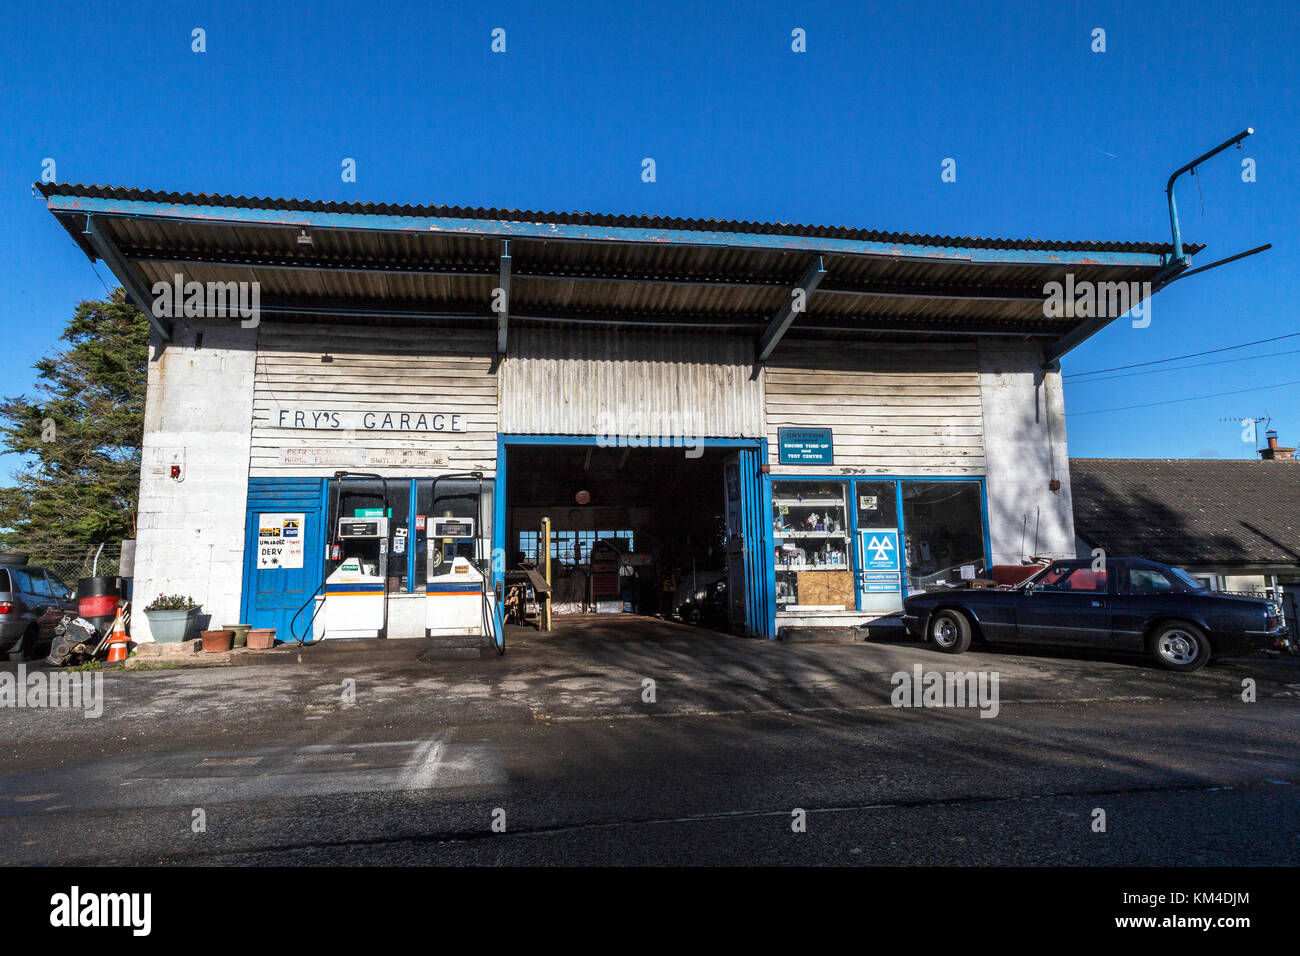 Frys un garage station service rural à Tedburn St Mary, Devon'déserts de carburant',les communautés rurales. Petites entreprises telles que les stations d'essence, l'essence Retai Banque D'Images